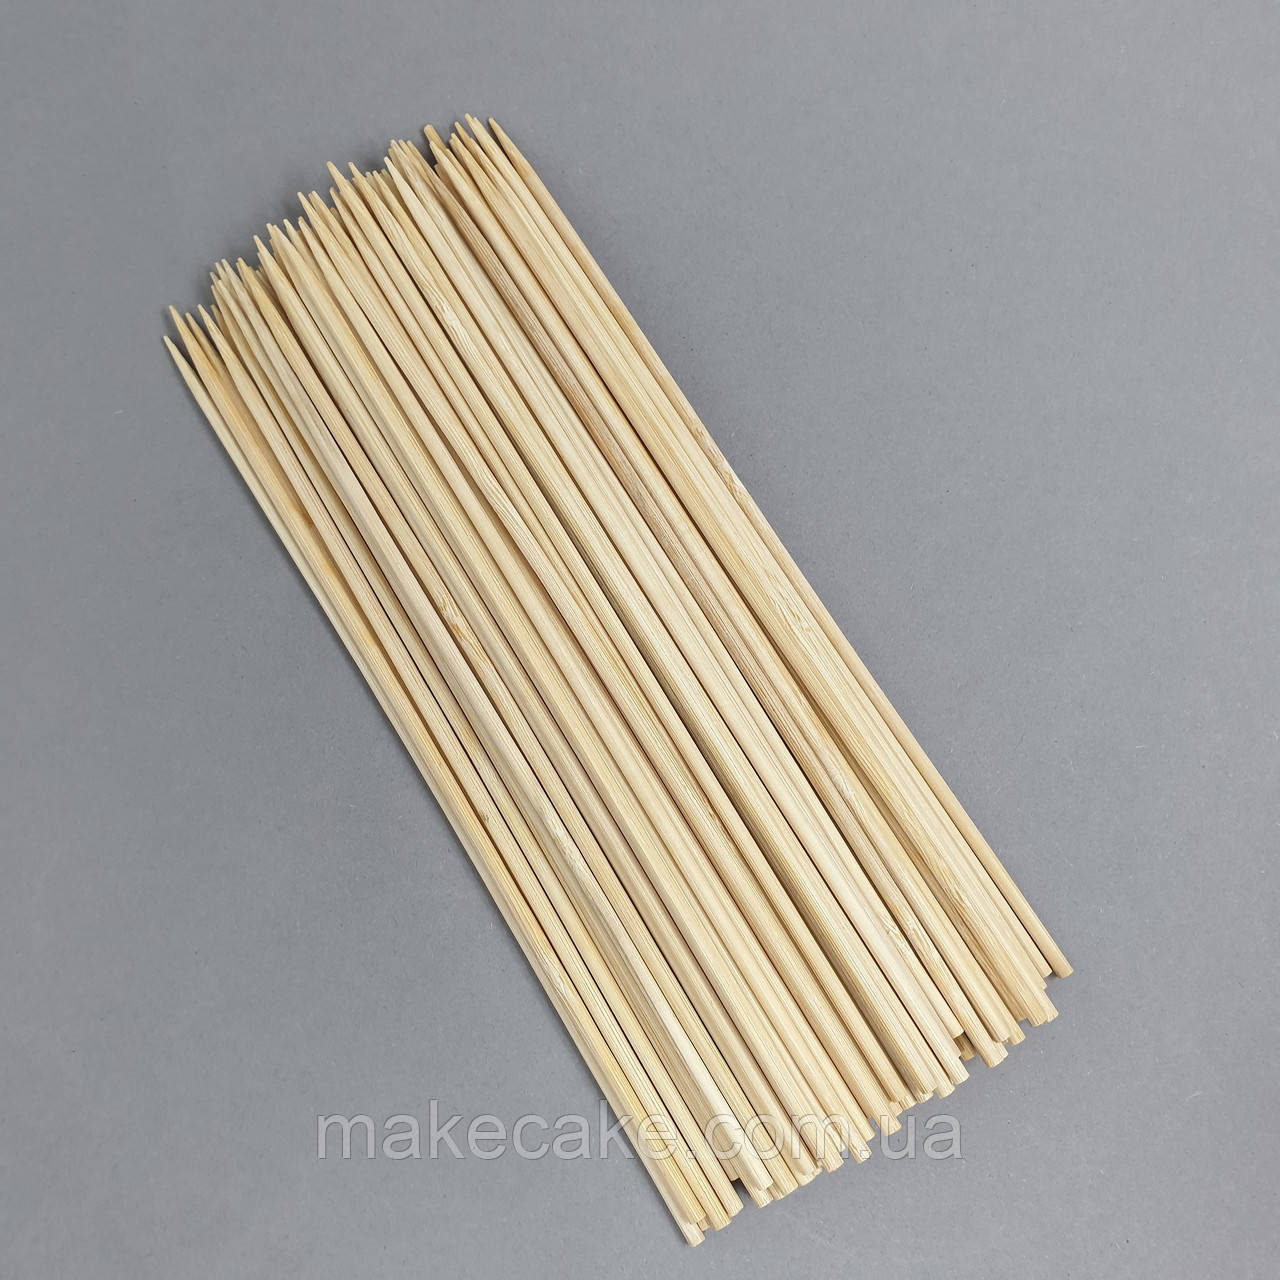 Дерев'яні шпажки (бамбукові палички) 20 см — 100 шт.